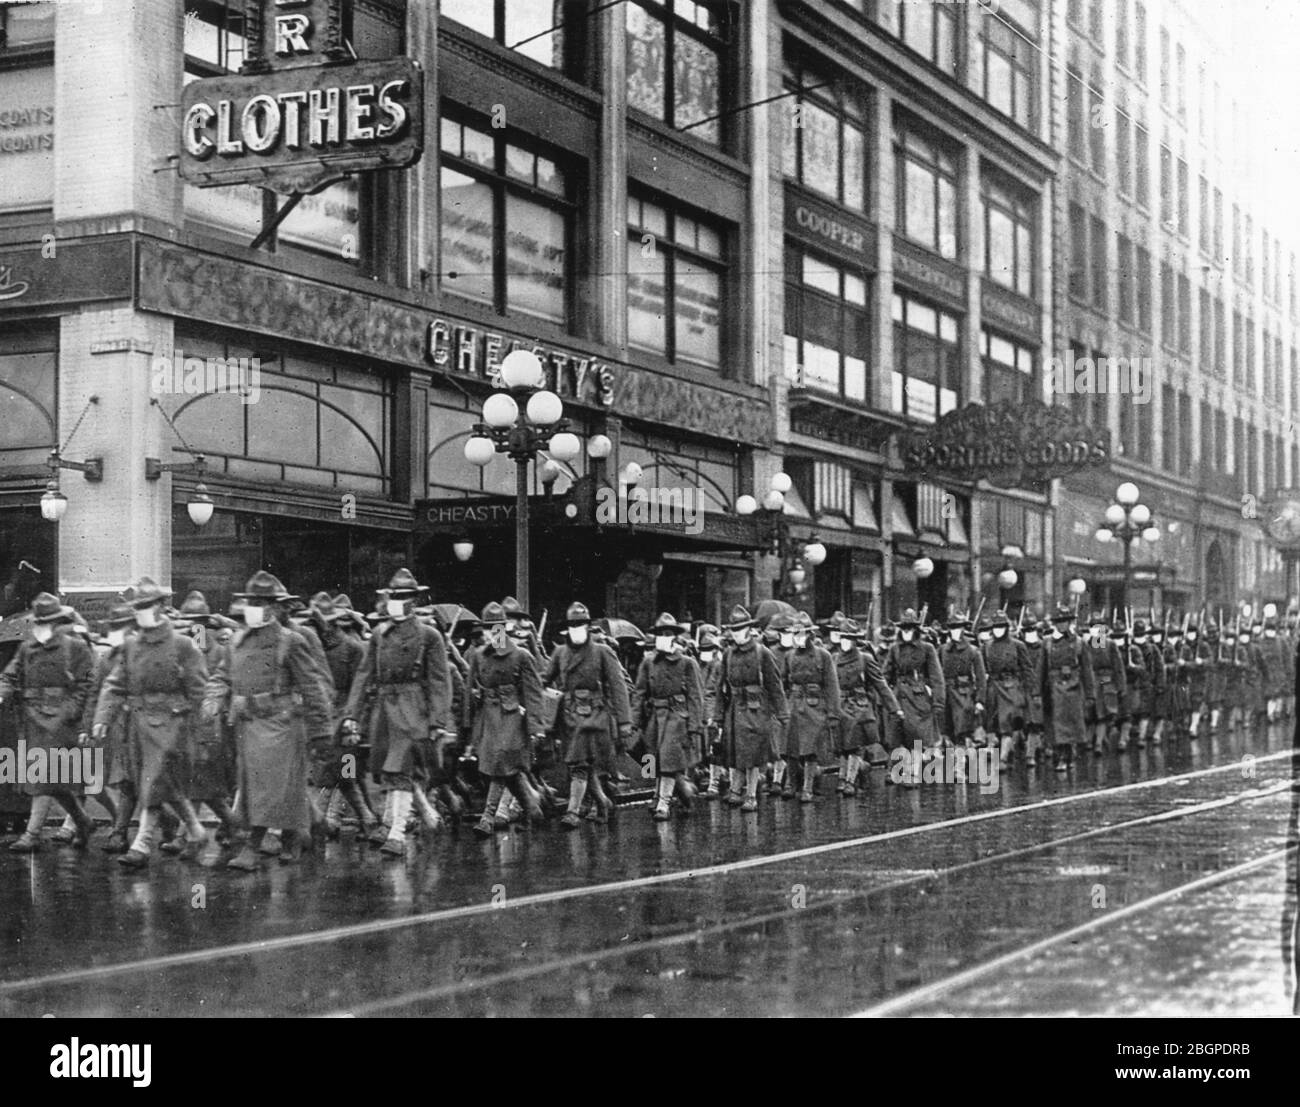 Il 39° reggimento dell'esercito degli Stati Uniti sulla strada per combattere in Francia marciò per le strade di Seattle, Washington, con ogni uomo che indossava una maschera protettiva realizzata dal Seattle Chapter of the American Red Cross. Seattle, 1918. Foto Stock